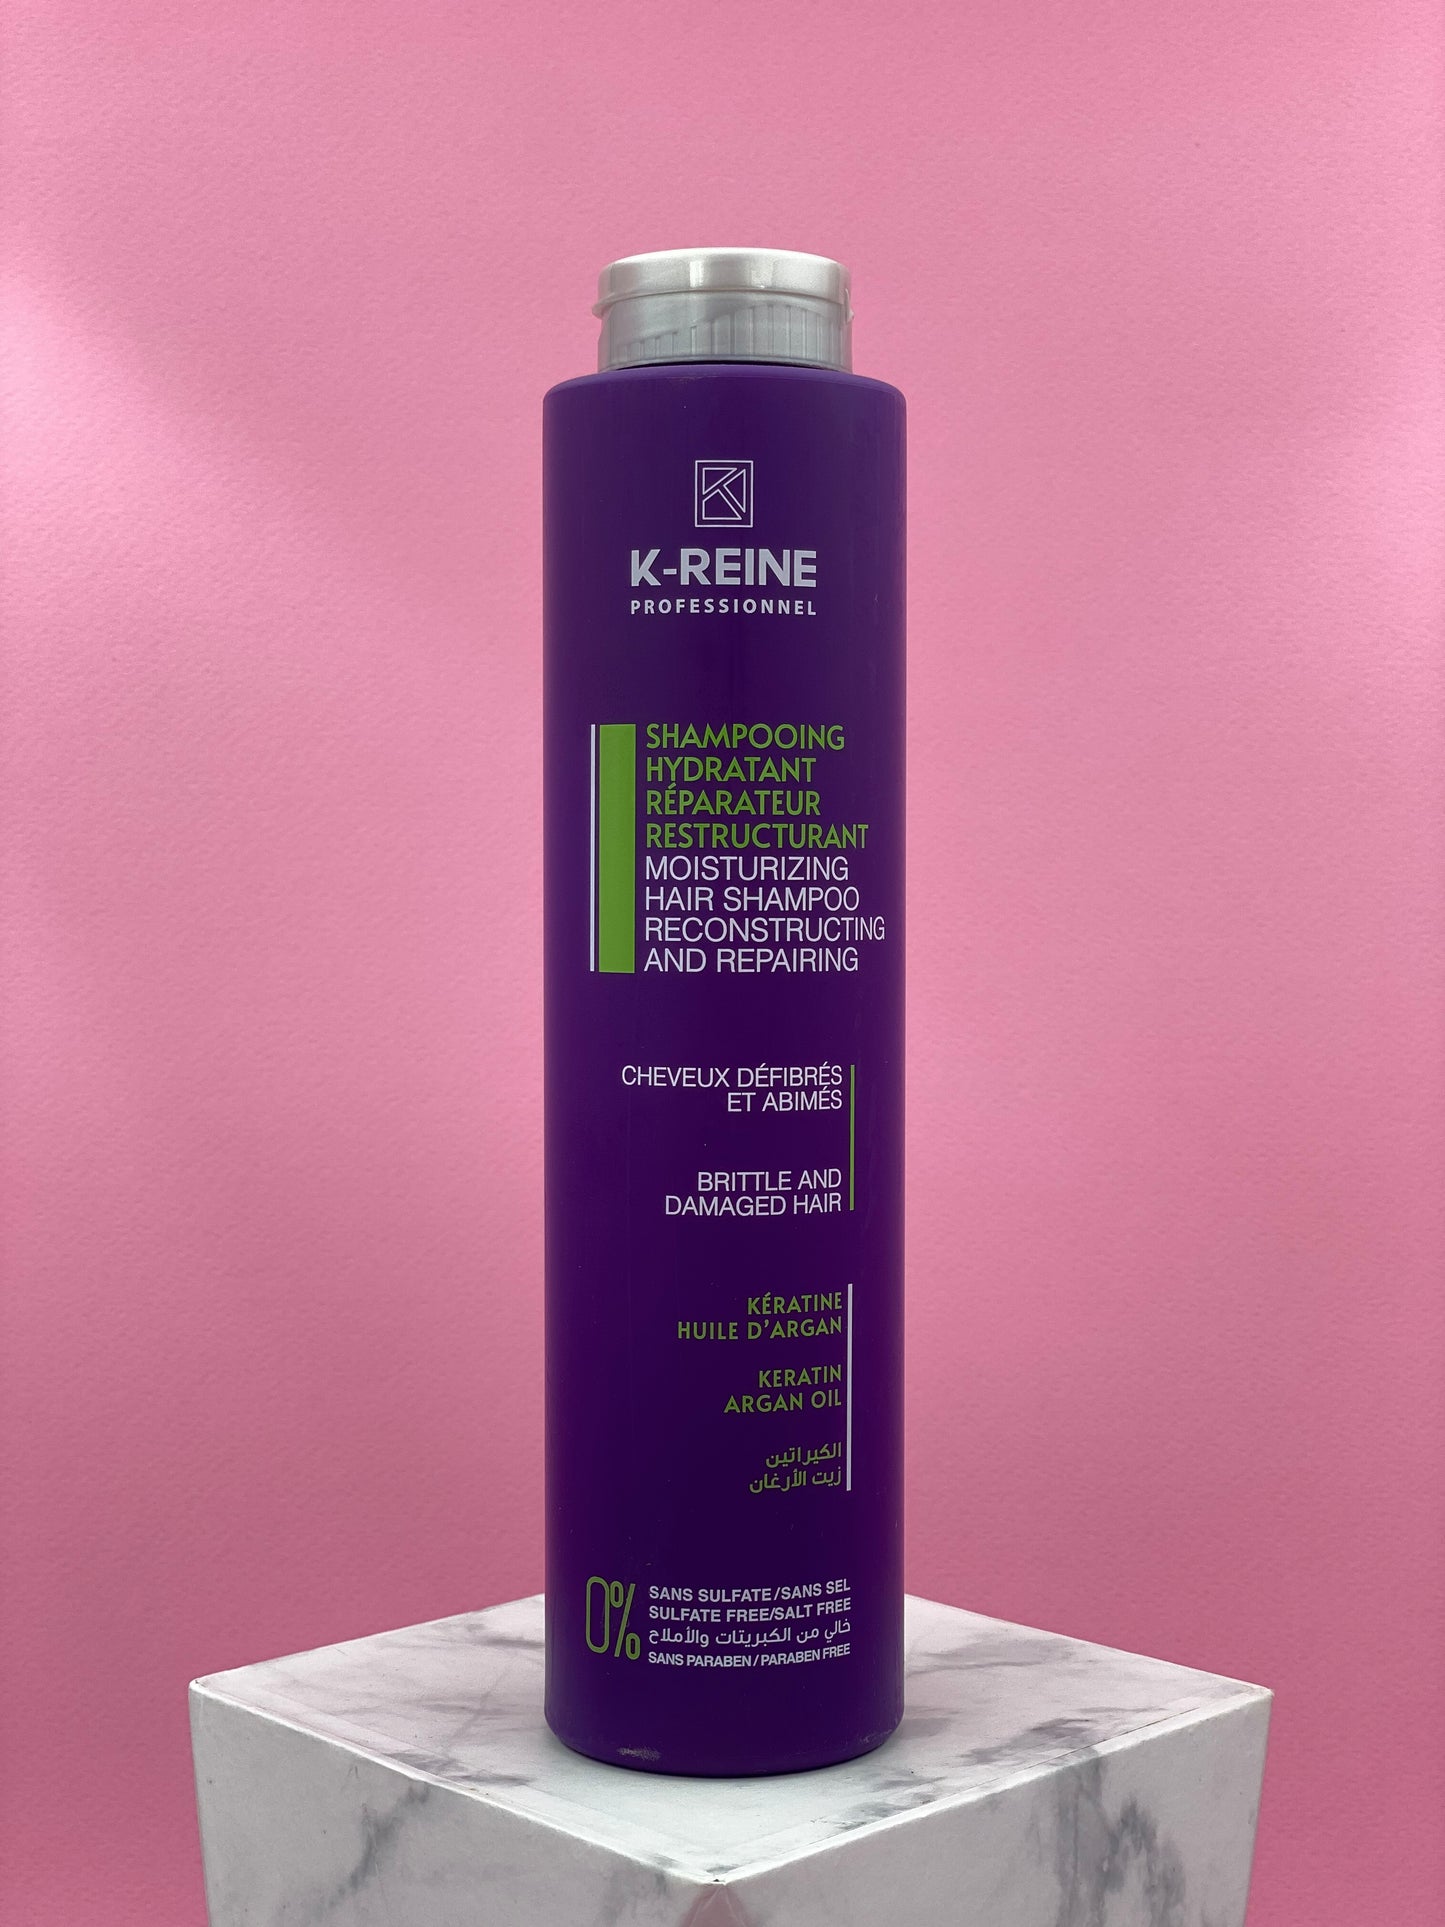 K-REINE Shampoing